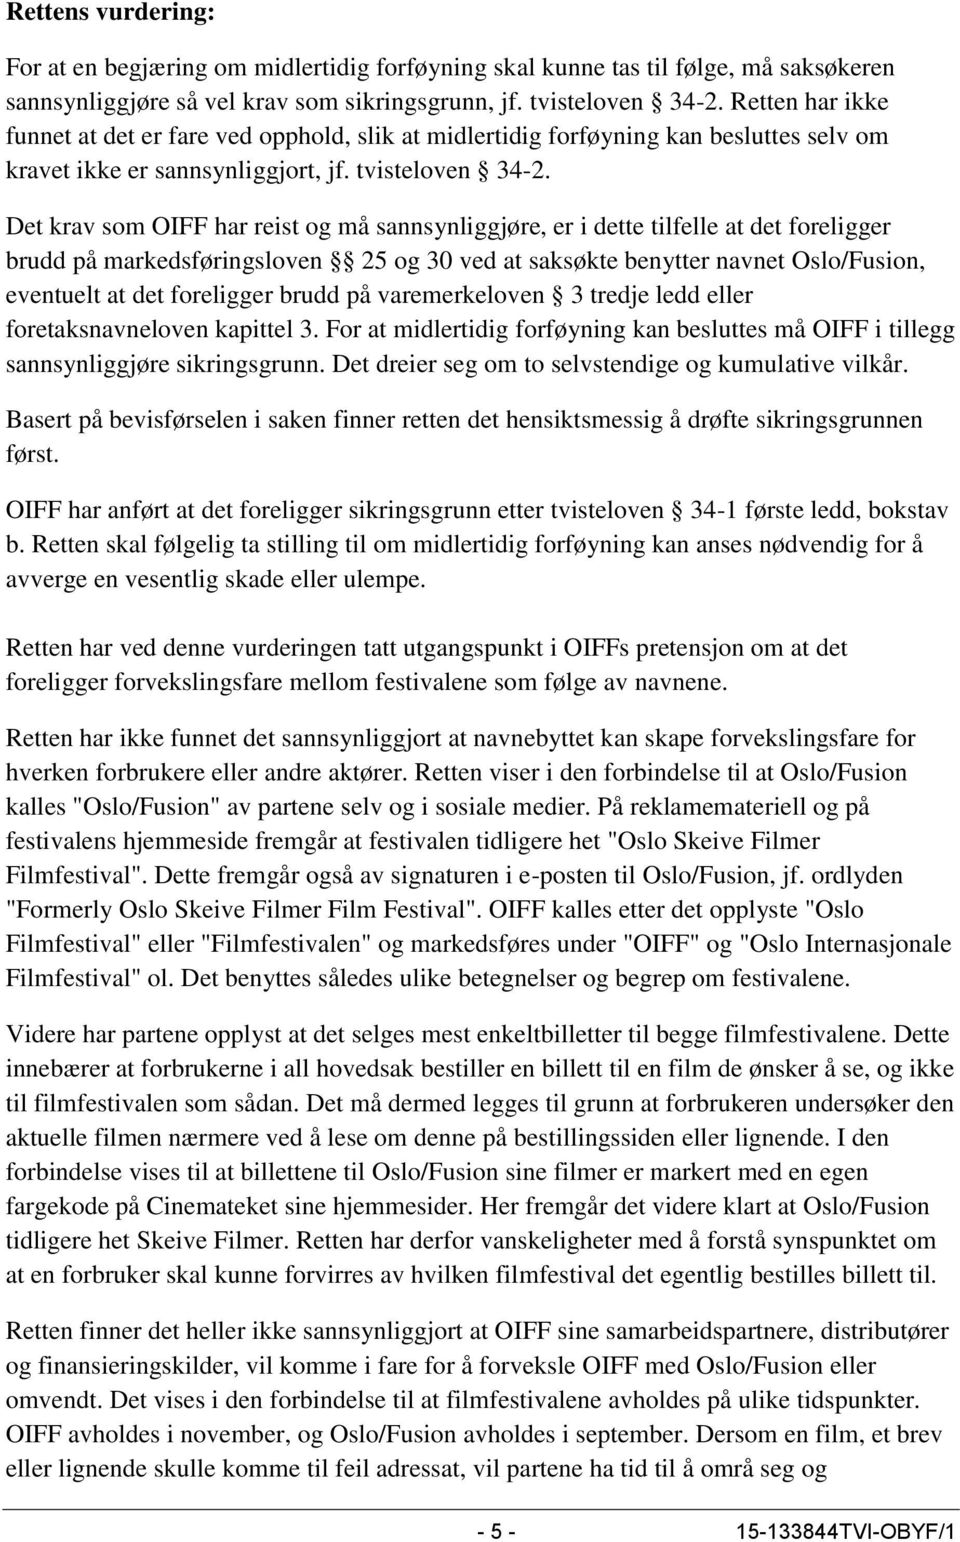 Det krav som OIFF har reist og må sannsynliggjøre, er i dette tilfelle at det foreligger brudd på markedsføringsloven 25 og 30 ved at saksøkte benytter navnet Oslo/Fusion, eventuelt at det foreligger